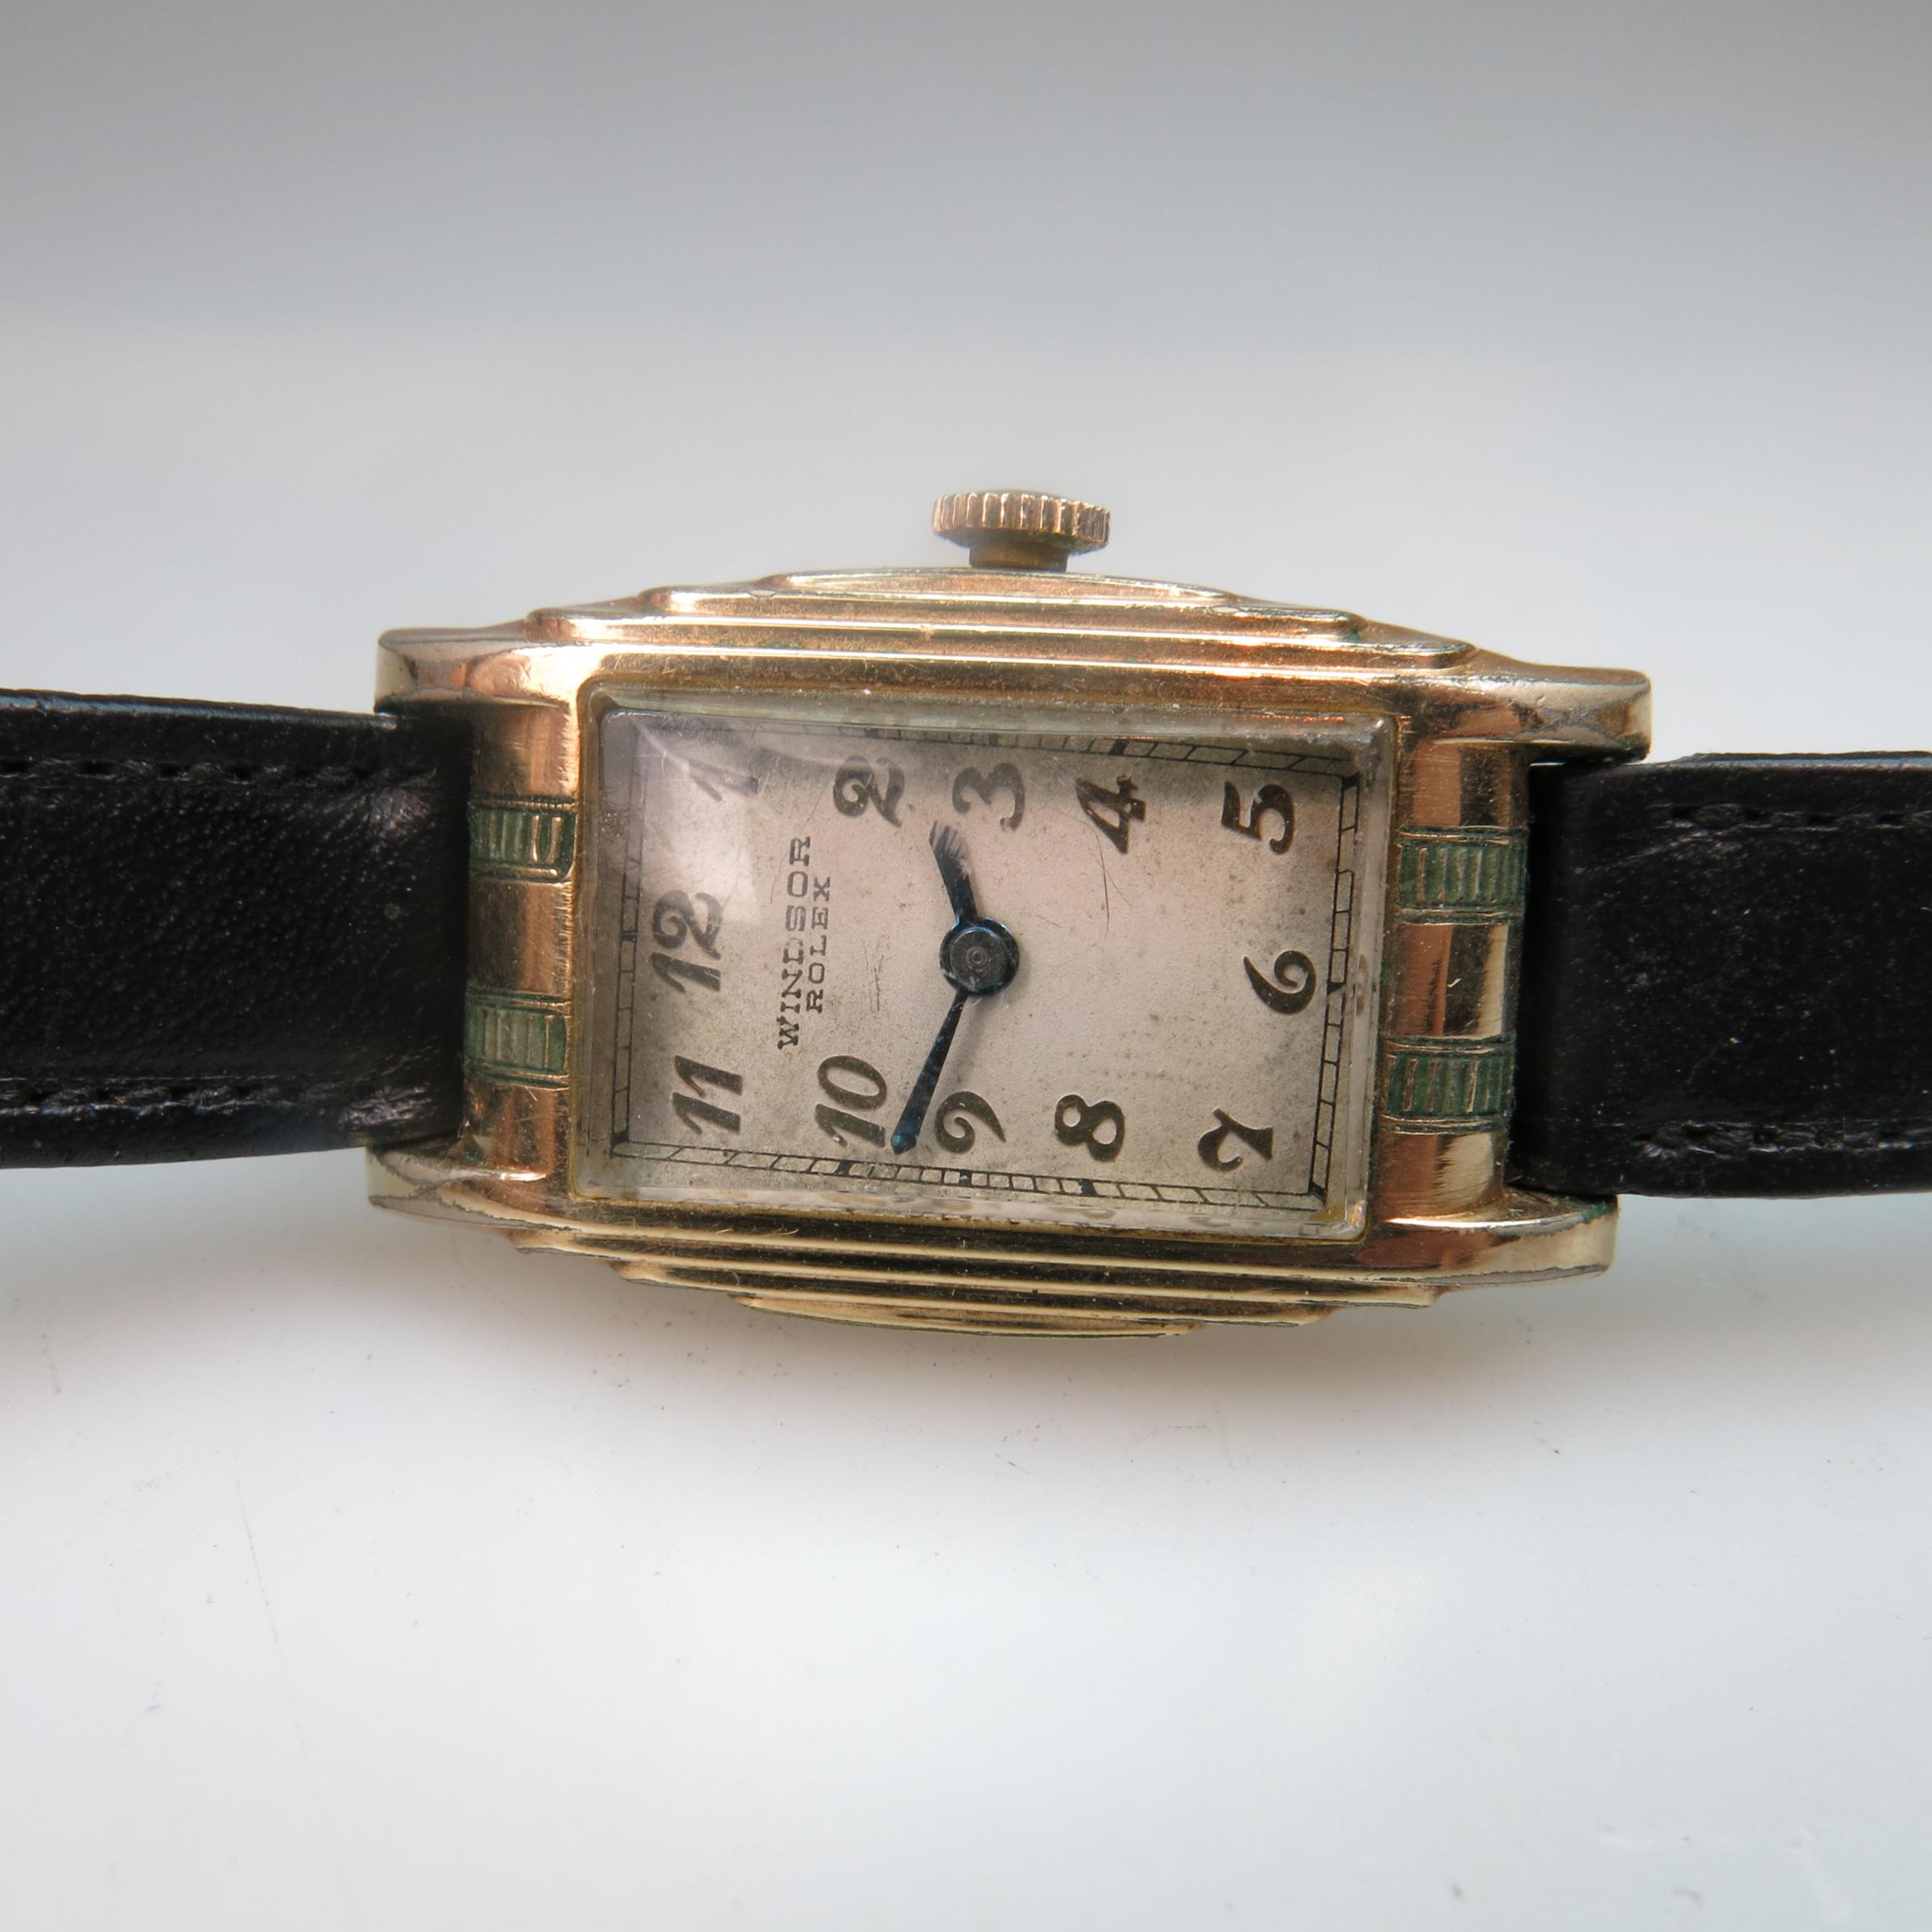 Rolex 'Windsor' Wristwatch